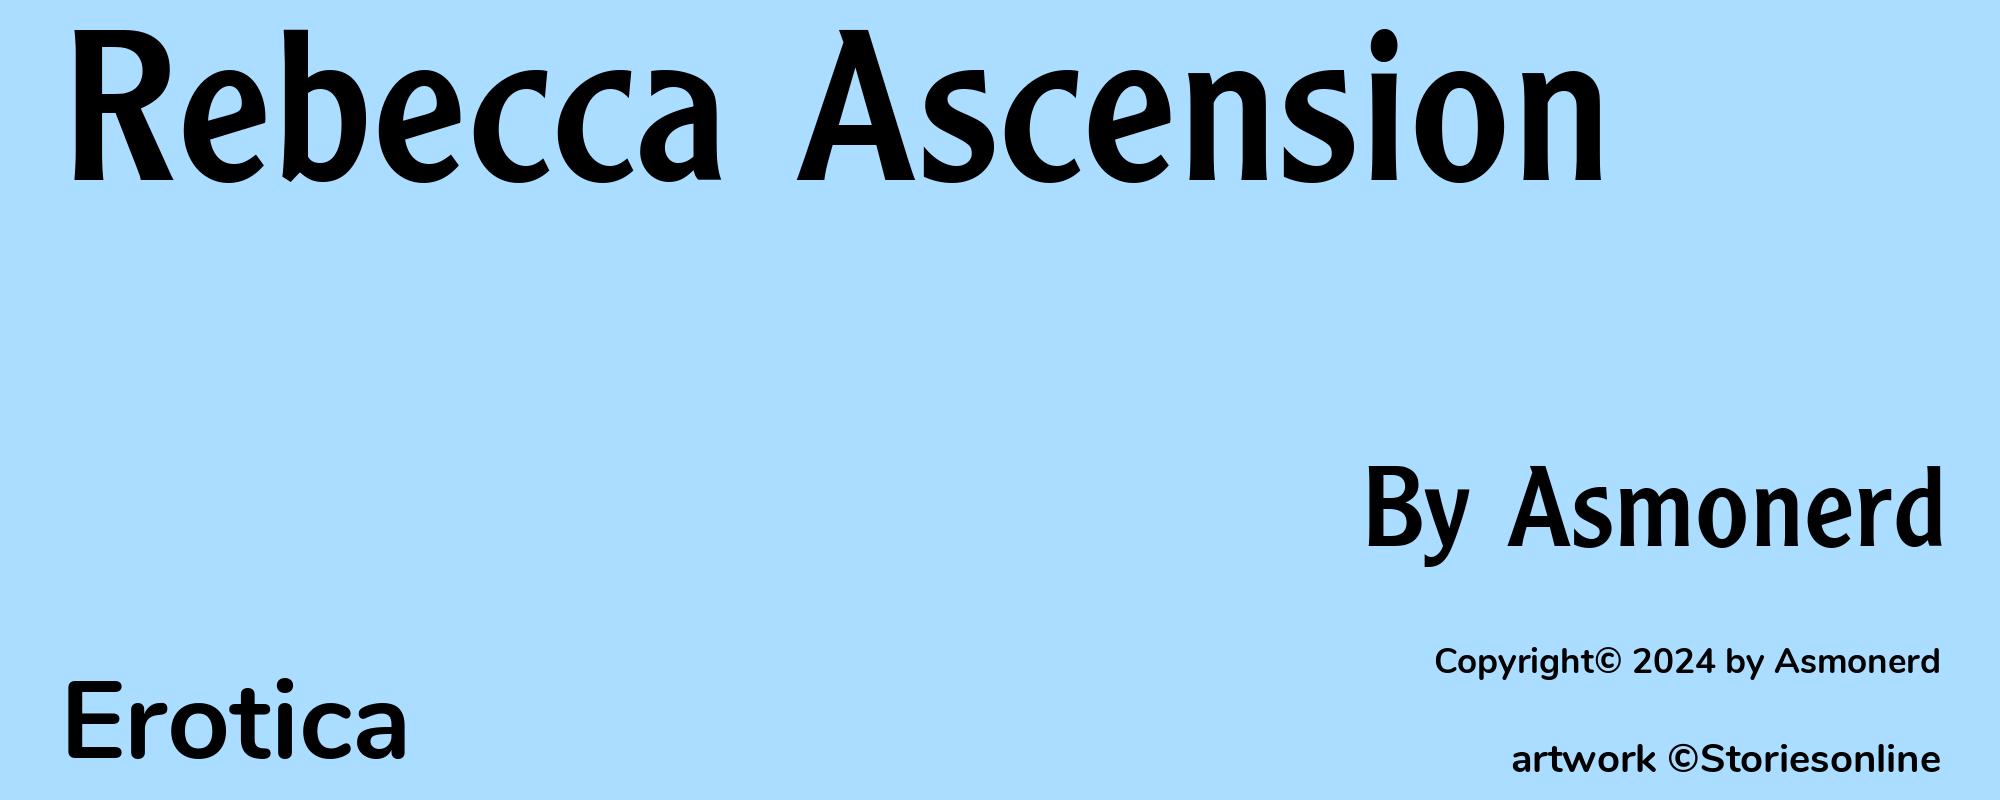 Rebecca Ascension - Cover